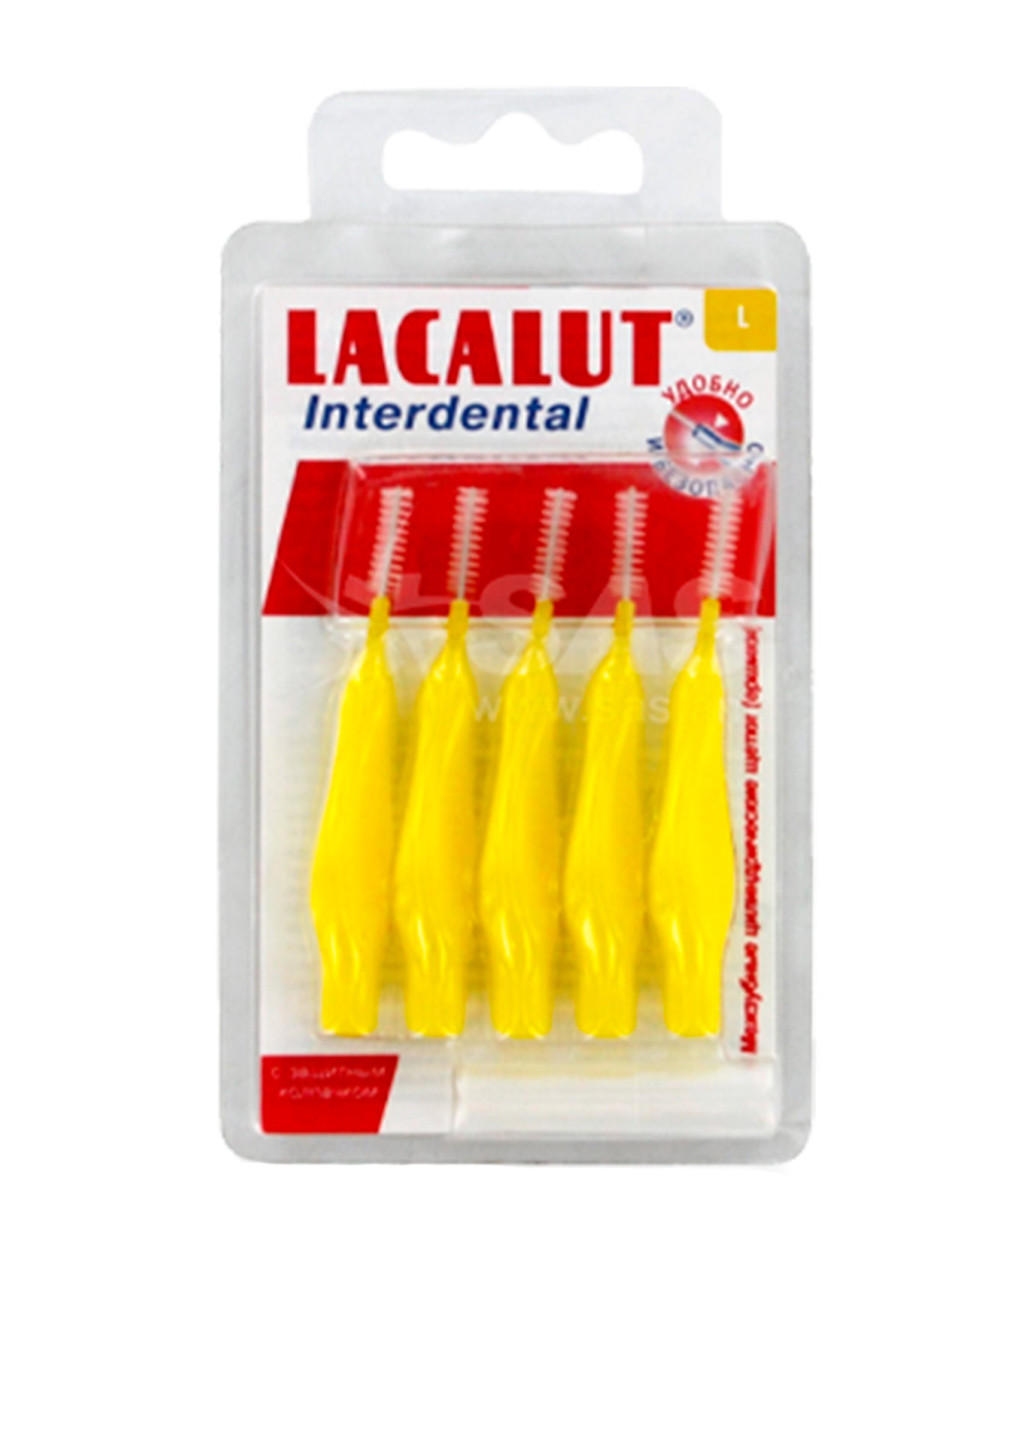 Межзубные щетки Interdental L, 5 шт. Lacalut (79090978)